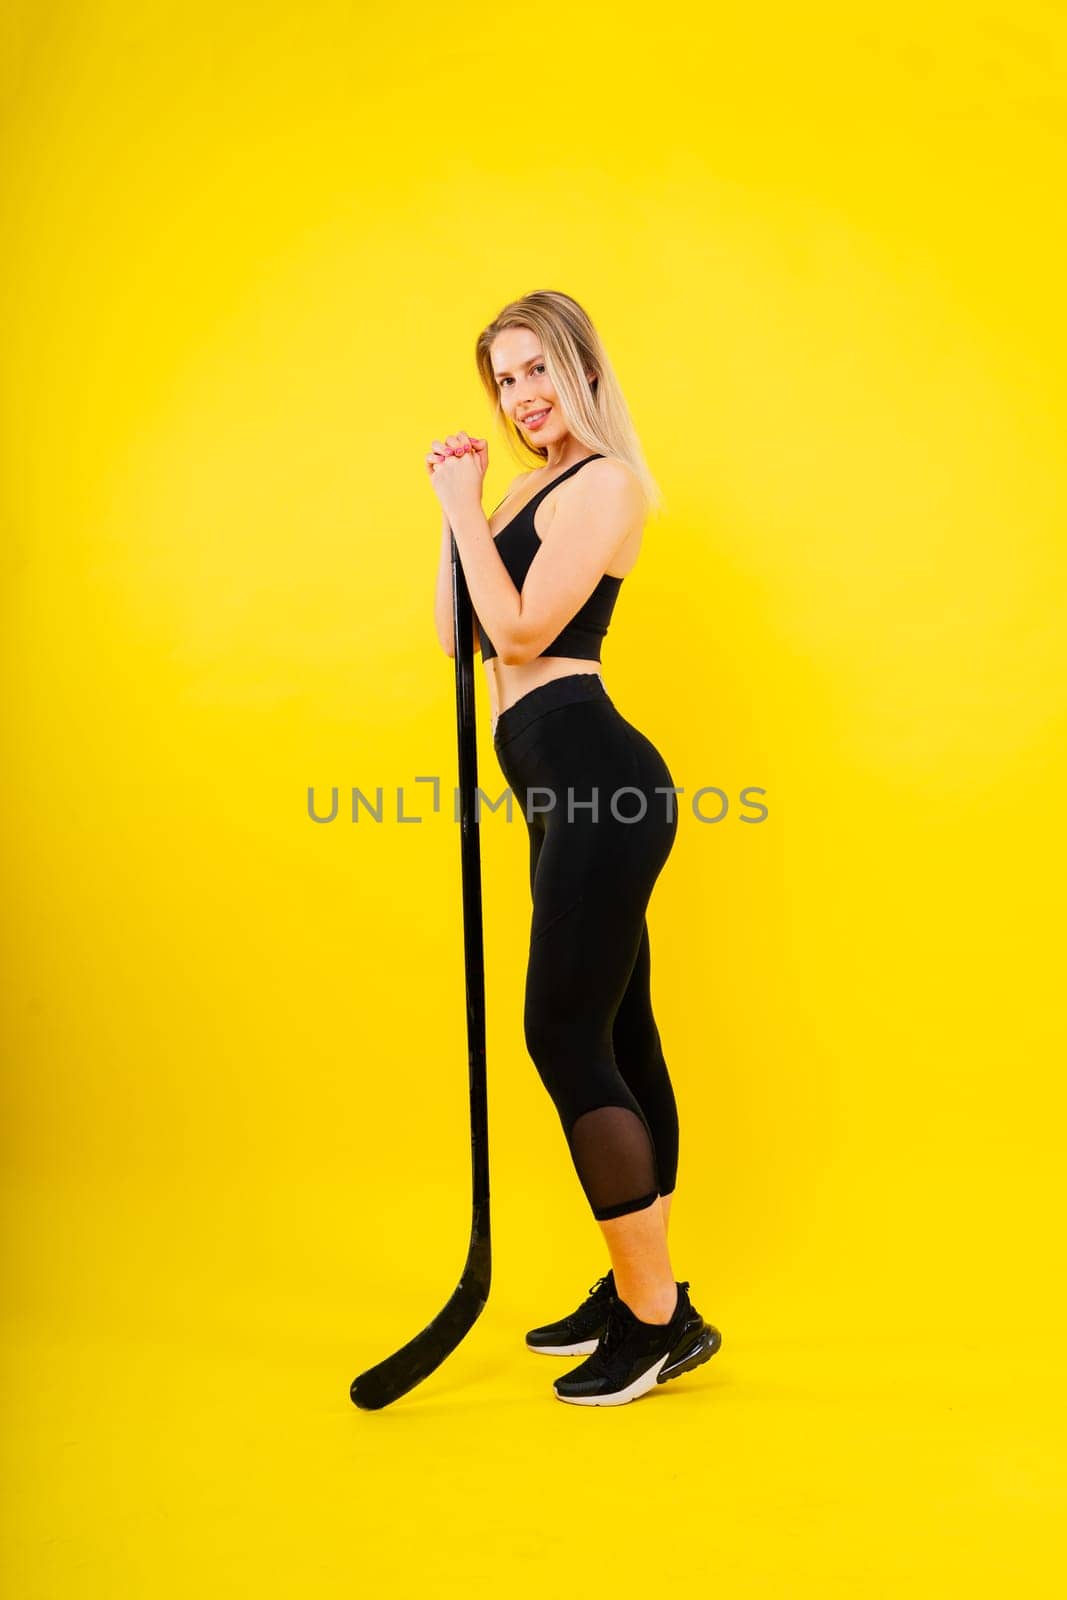 Ice hockey fan female in sports wear with hockey stick in a studio